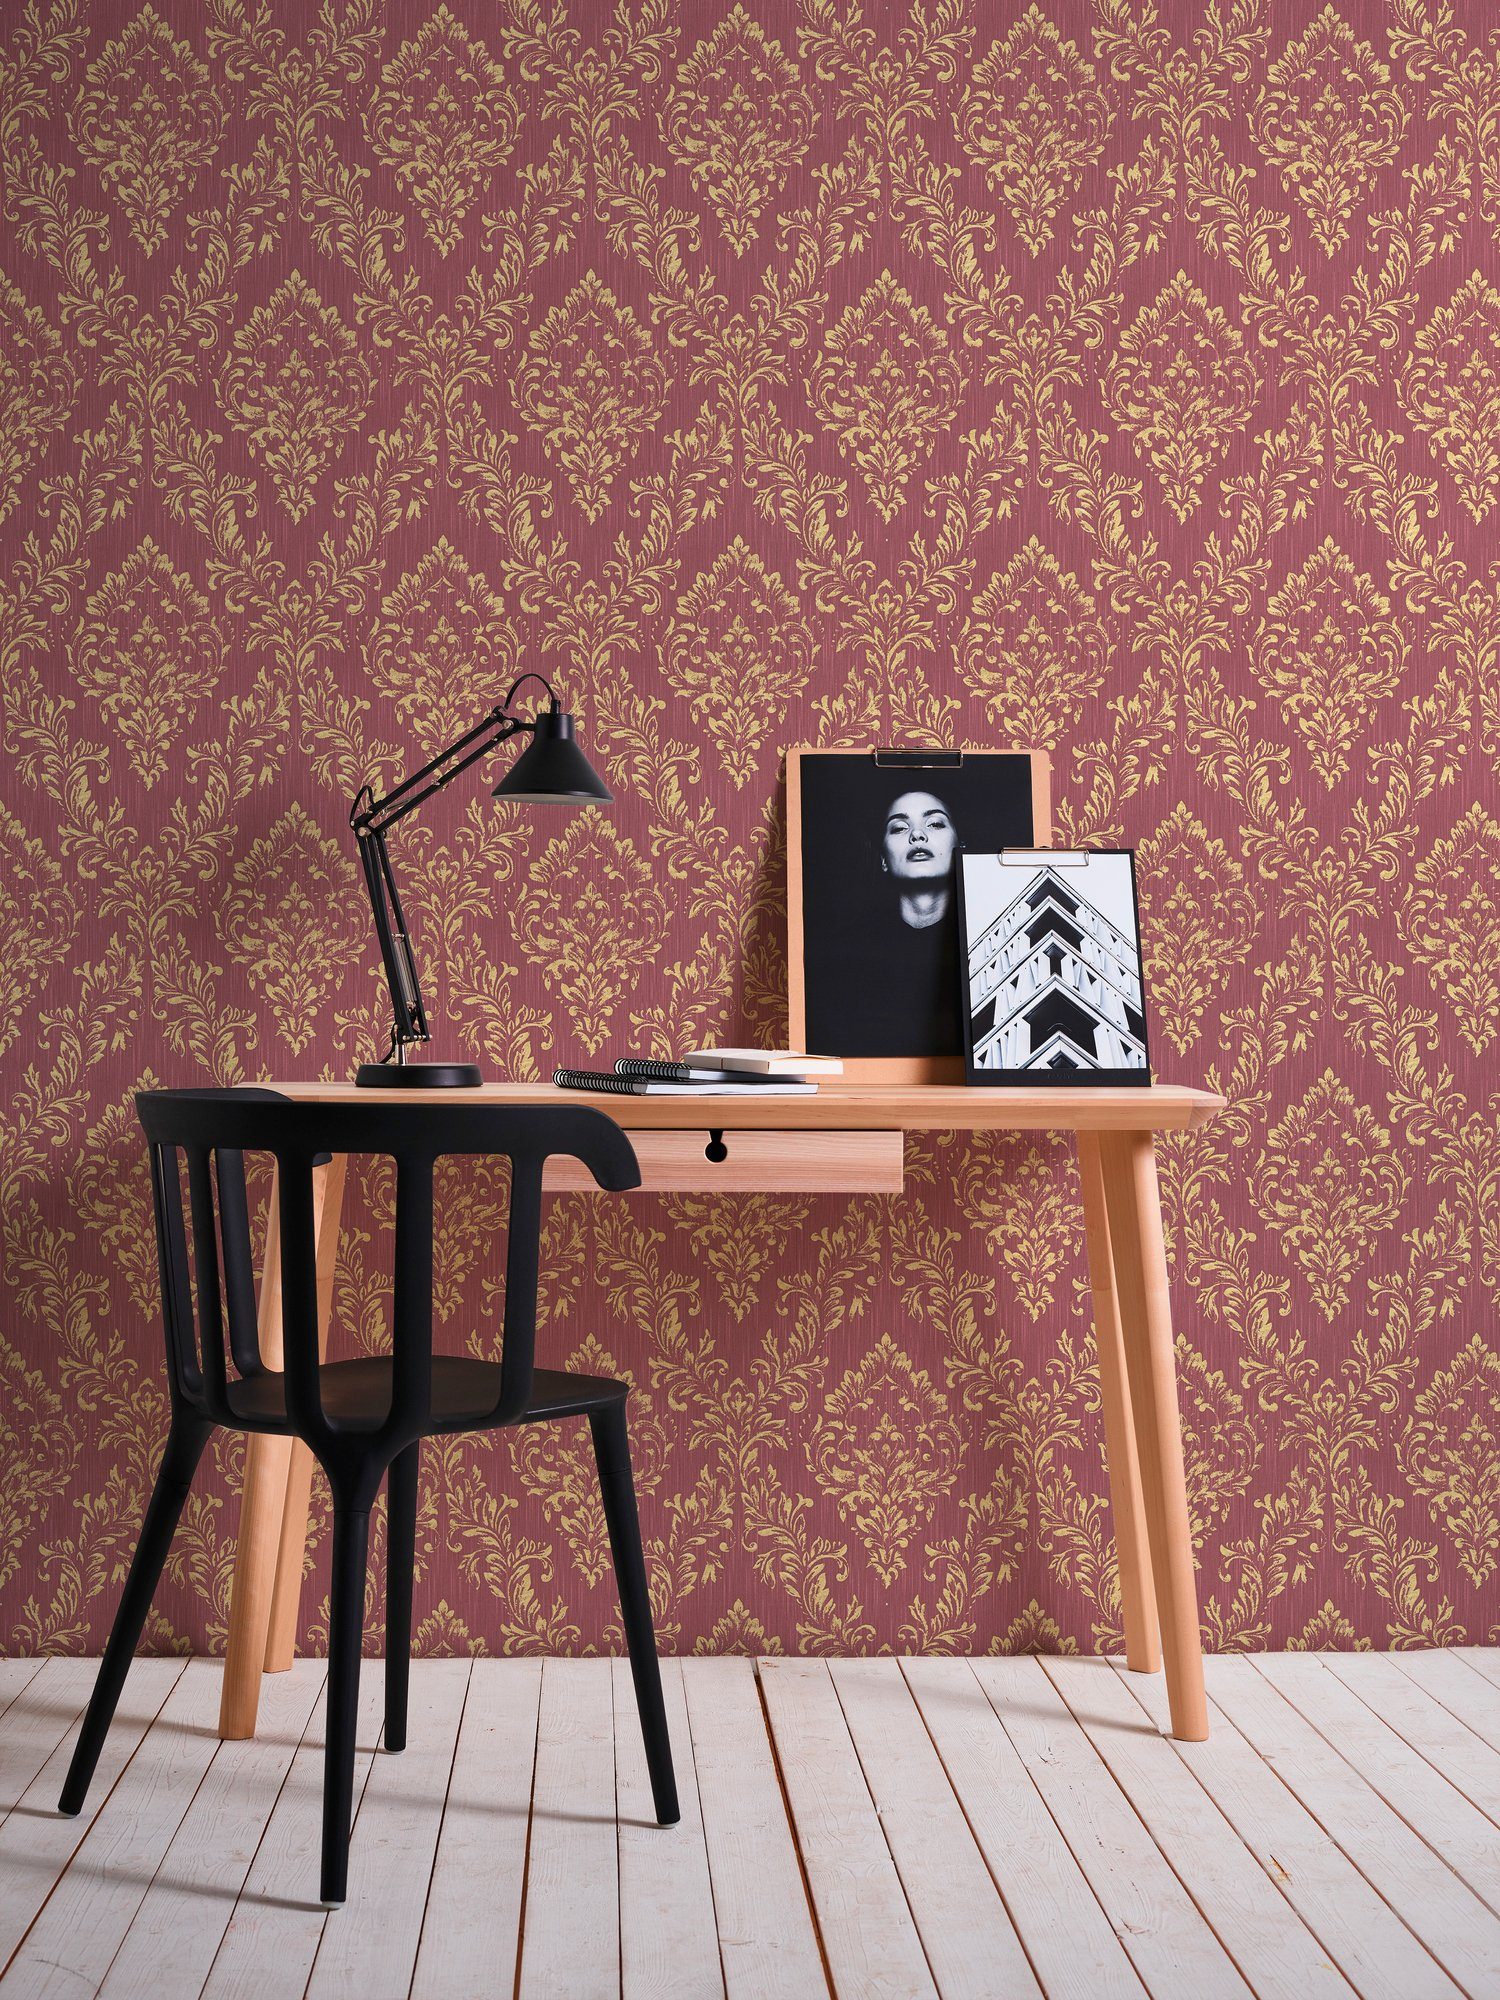 A.S. Barock glänzend, Tapete Création Ornament Paper Architects Textiltapete Barock, Metallic matt, samtig, gold/rot Silk,